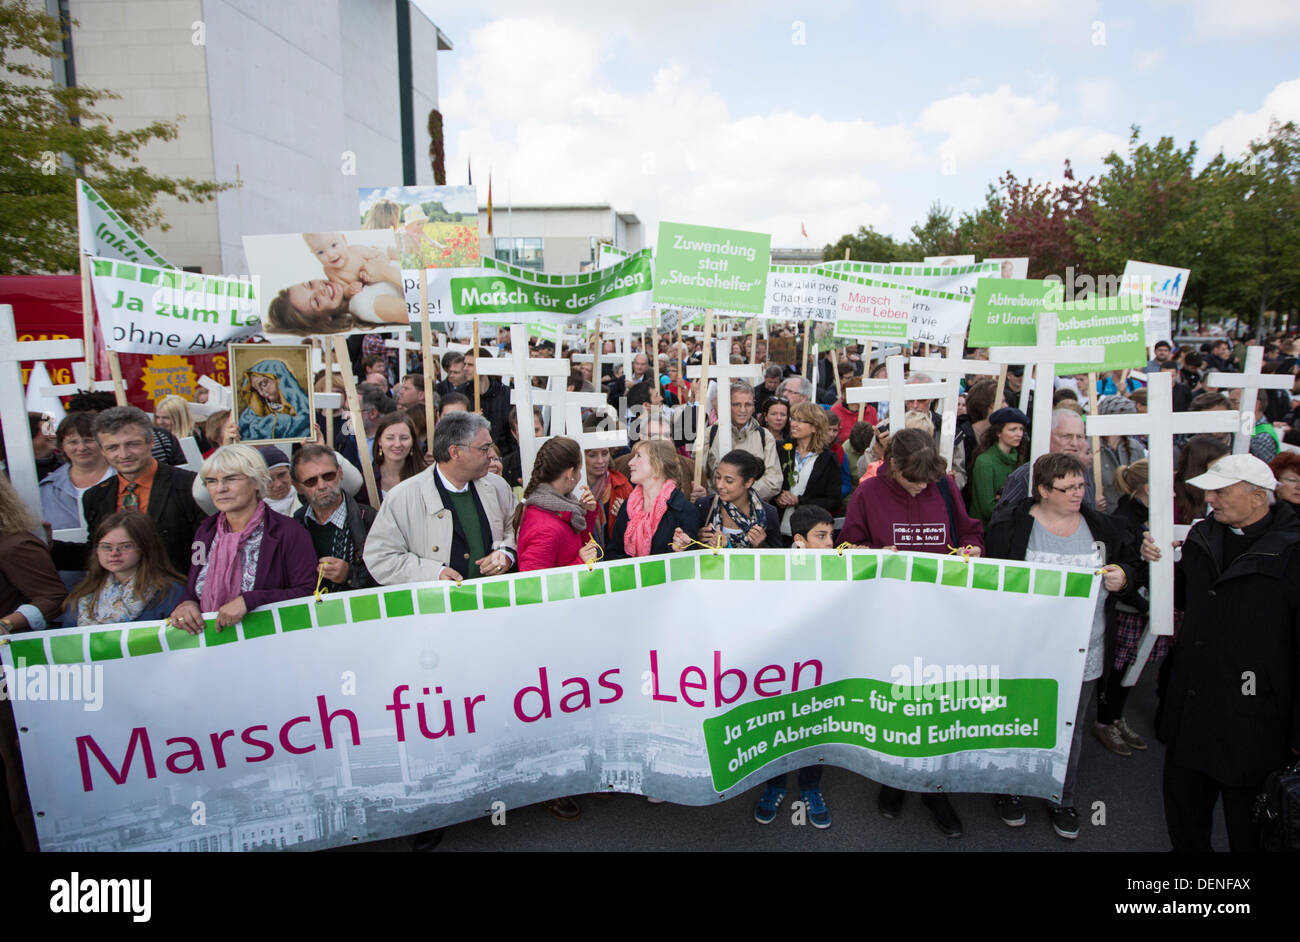 Persone manifestano contro l'aborto a Berlino, Germania, 21 settembre 2013. Diverse centinaia di anti-aborto attivisti seguita una chiamata di gruppi cristiani e dimostrato sotto il motto "arco di vita". Foto: Florian SCHUH Foto Stock